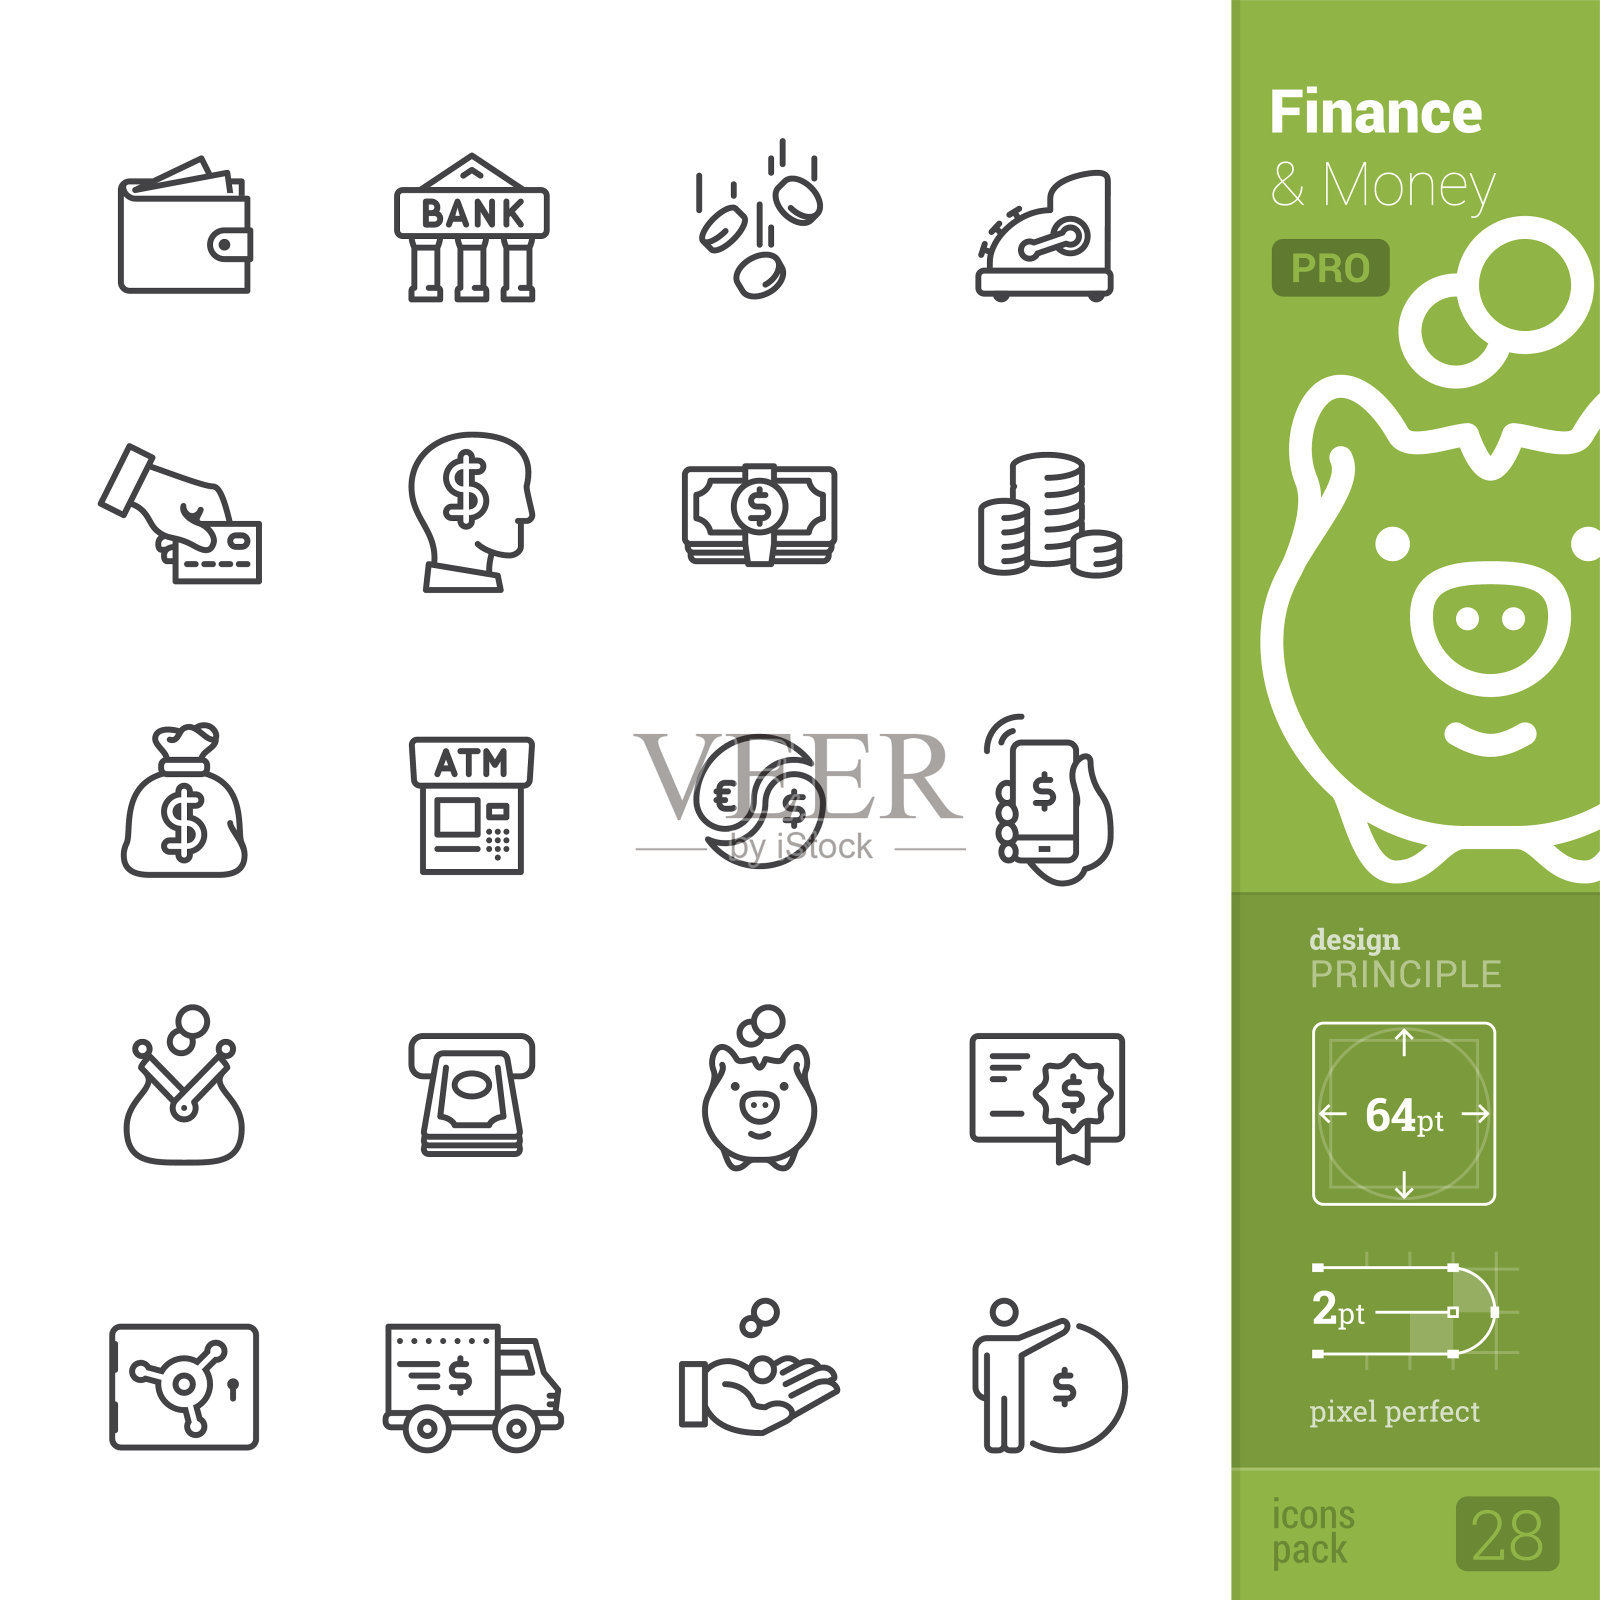 金融和金钱矢量图标- PRO包图标素材